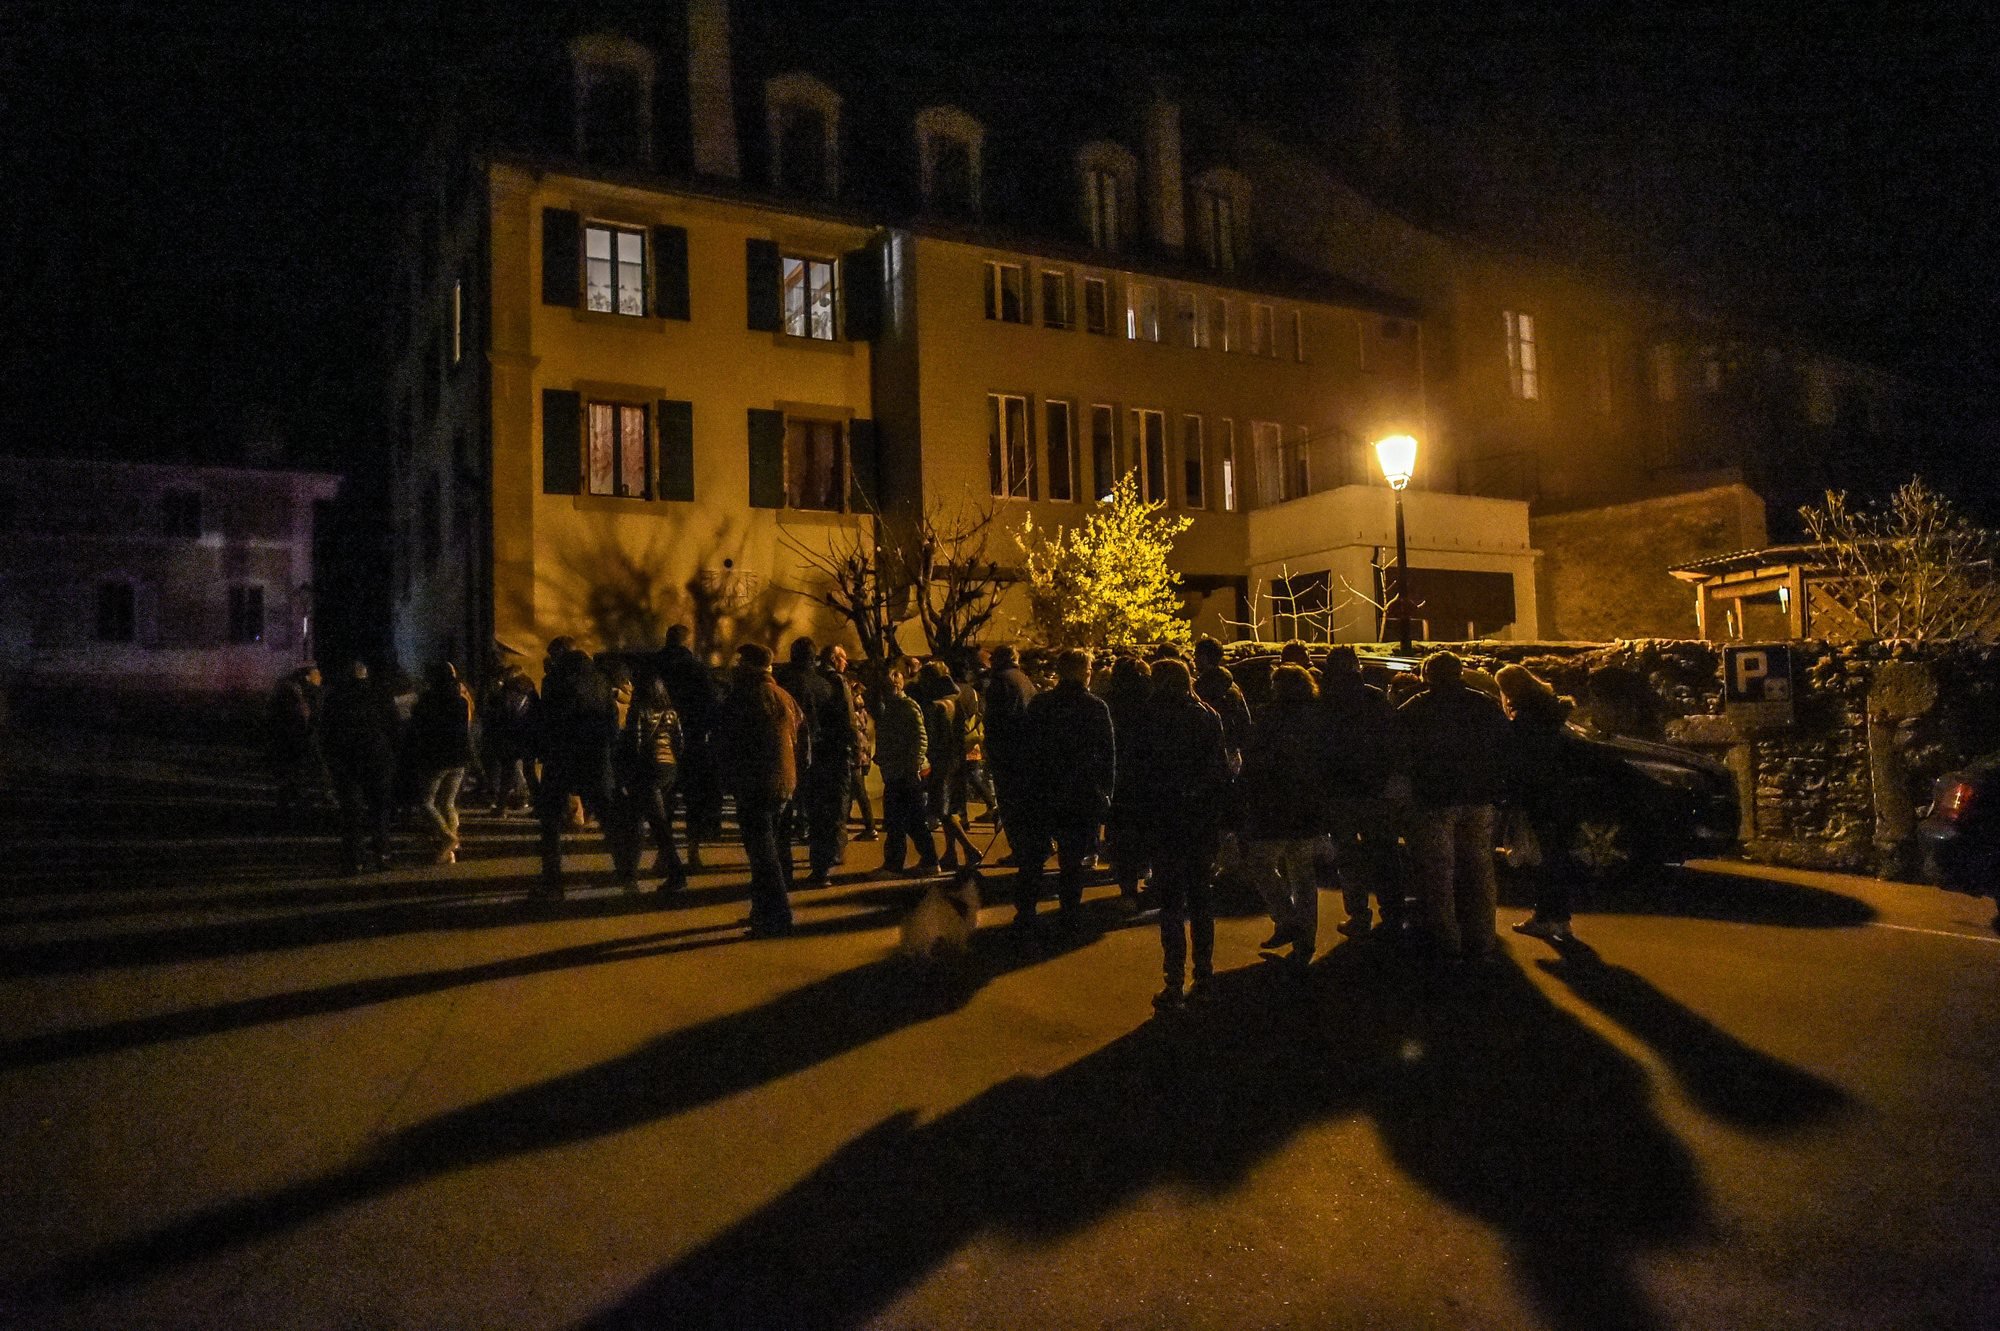 En mars dernier, la commune avait éteint l'espace d'une soirée l'éclairage nocturne dans une grande partie de la localité.